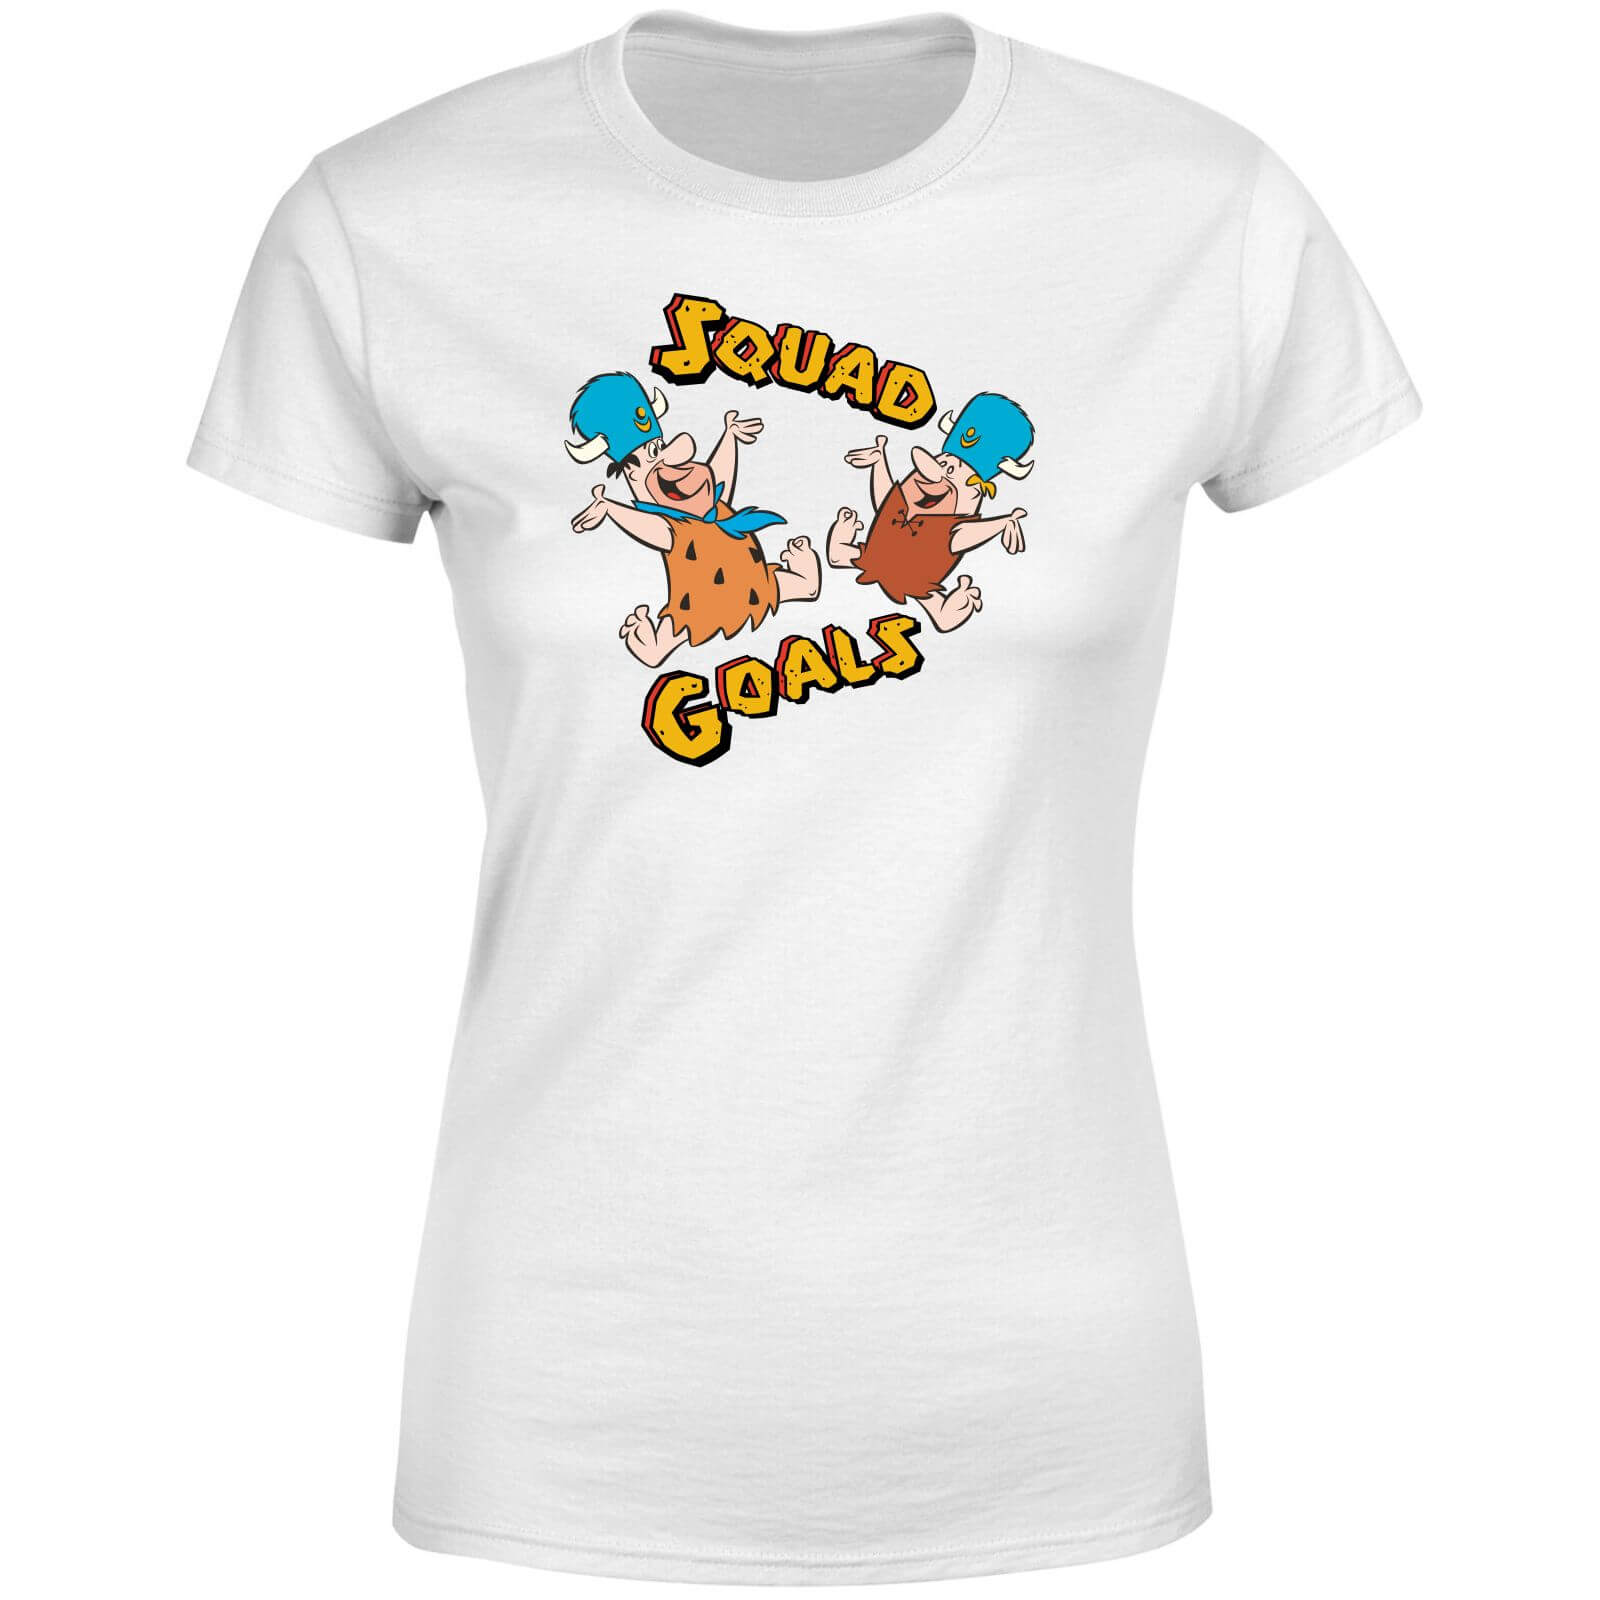 The Flintstones Squad Goals Women's T-Shirt - White - S - White